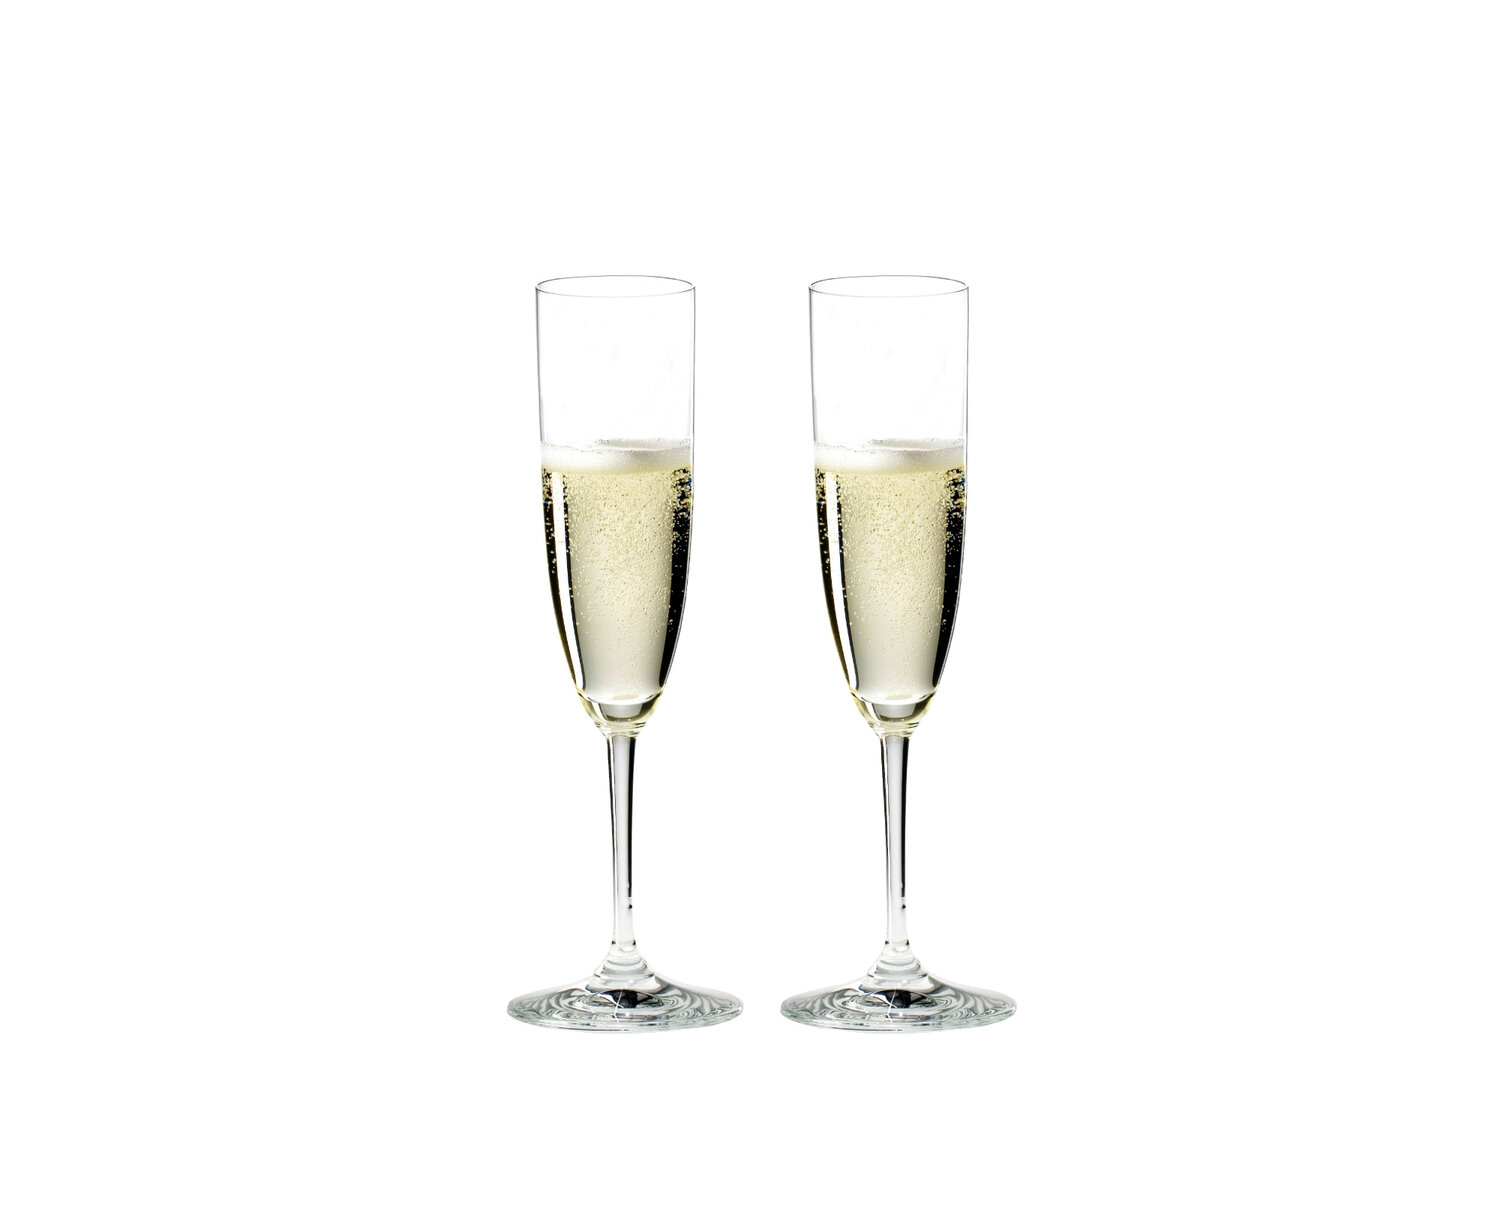 Riedel Vinum Crystal Champagne Flute, Set of 6